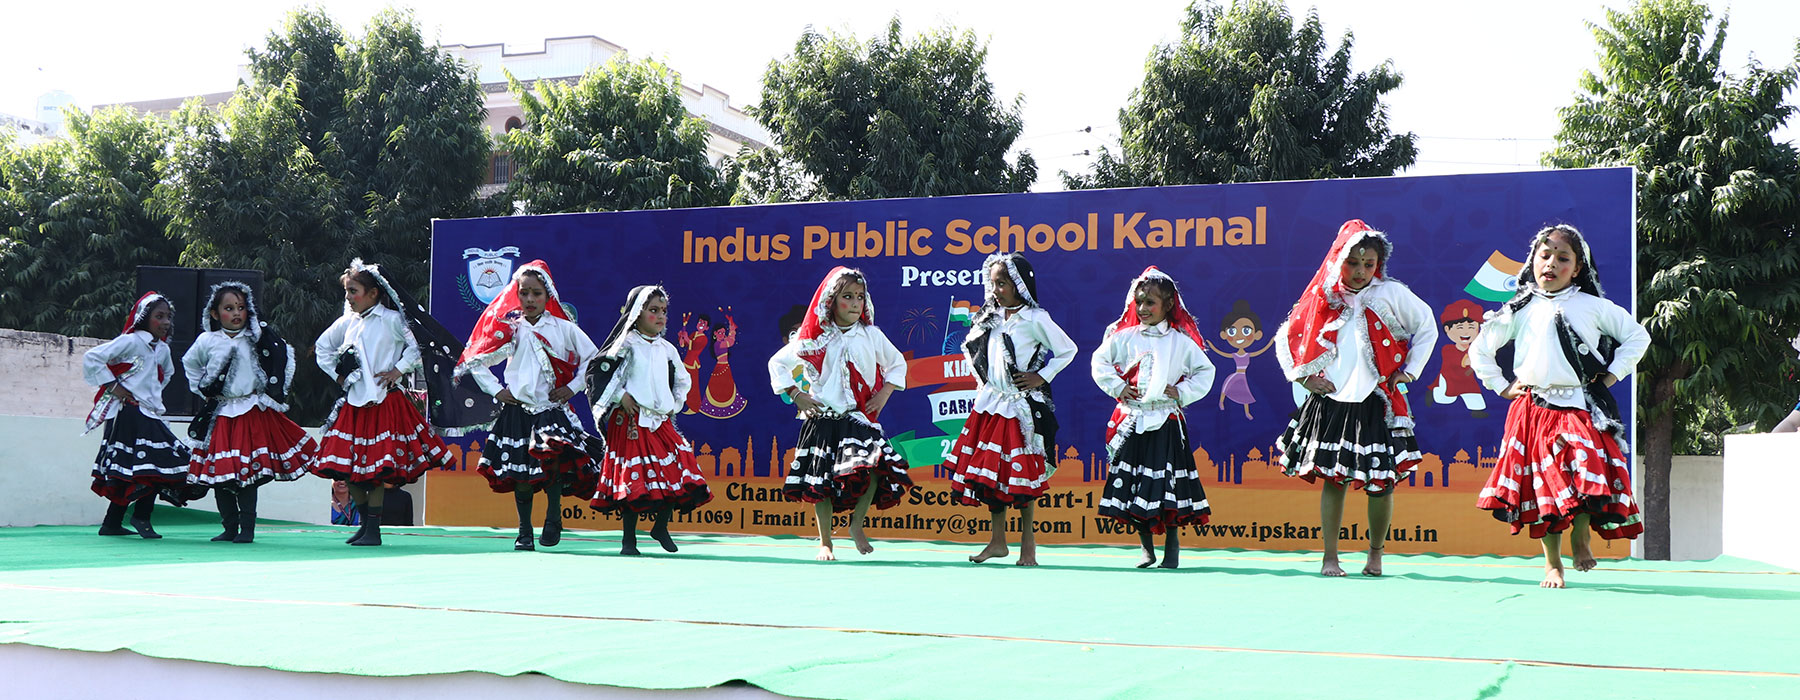 Indus Public School Karnal Schools 03